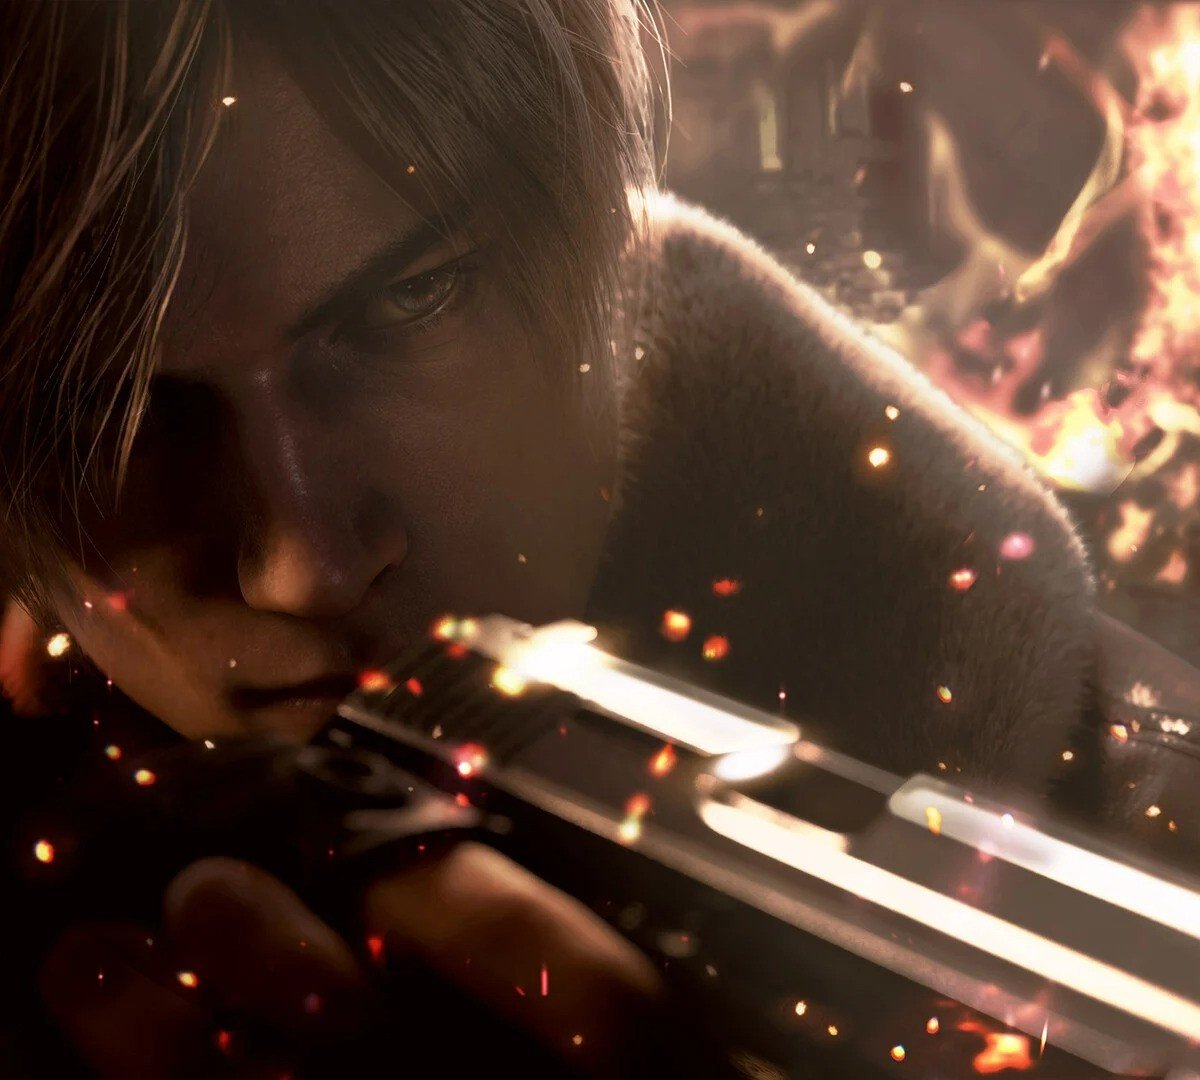 Resident Evil 4: Remake já vendeu mais de 3 milhões de cópias